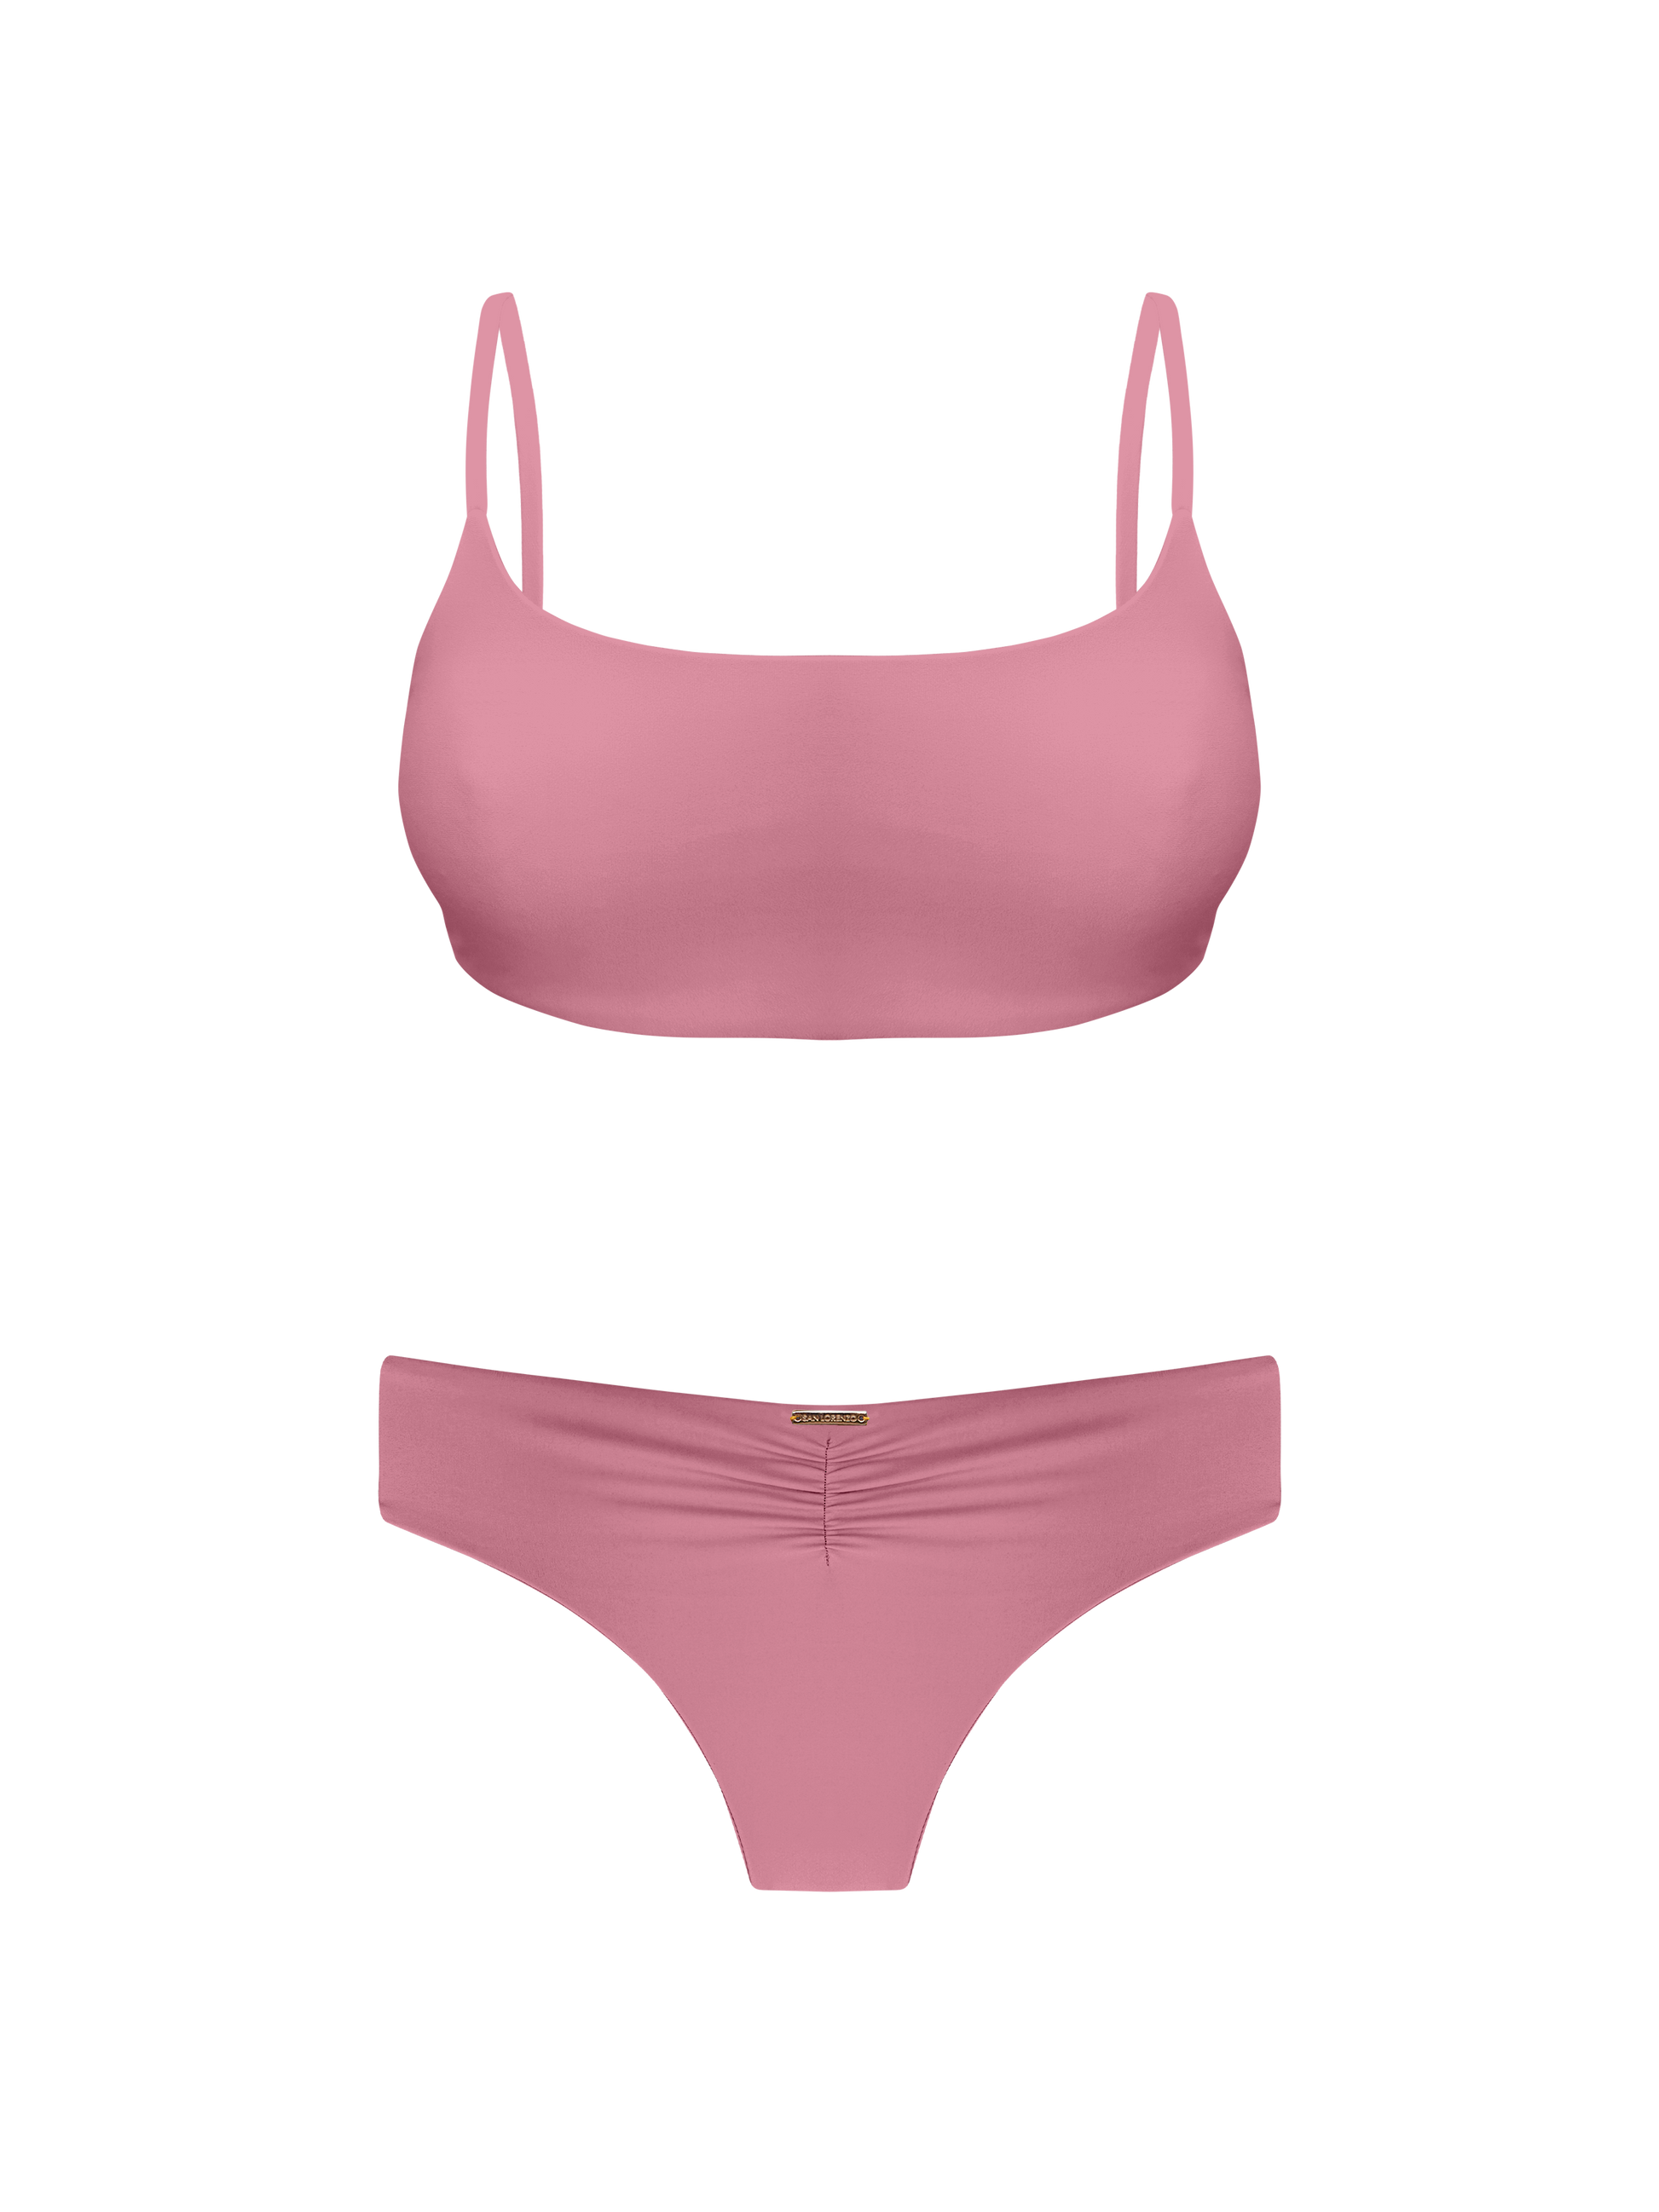 Sport Cross Back Bikini Top Top Pink X-Small Coral Colletion By San Lorenzo  – San Lorenzo Bikinis